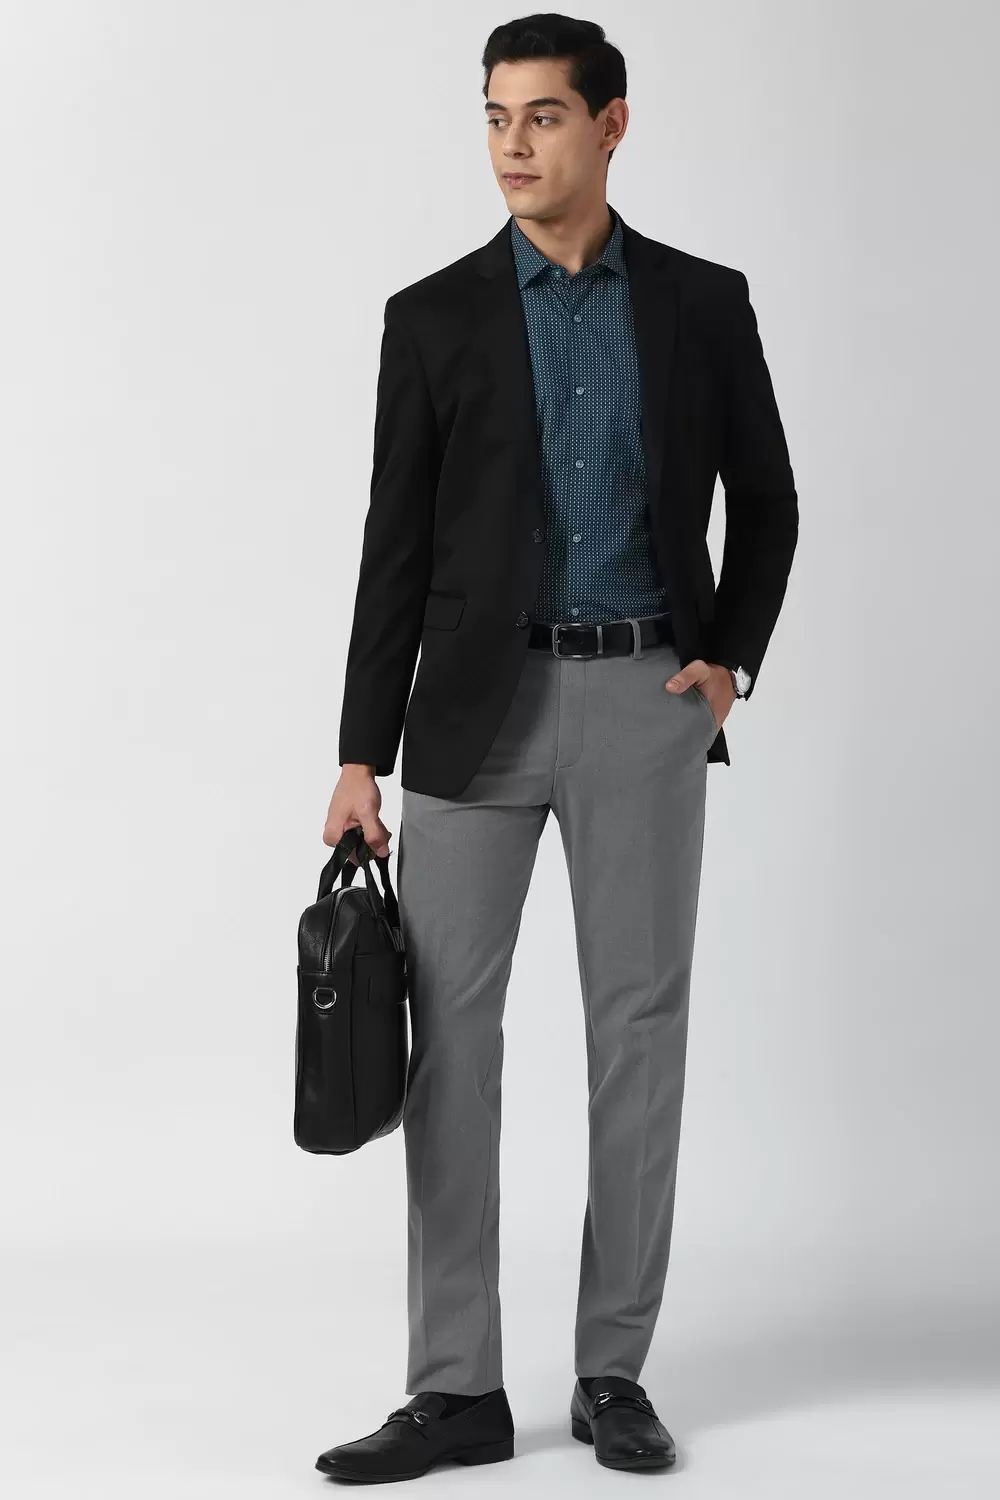 Peter England Men Black Solid Slim Fit trendy Formal Blazer